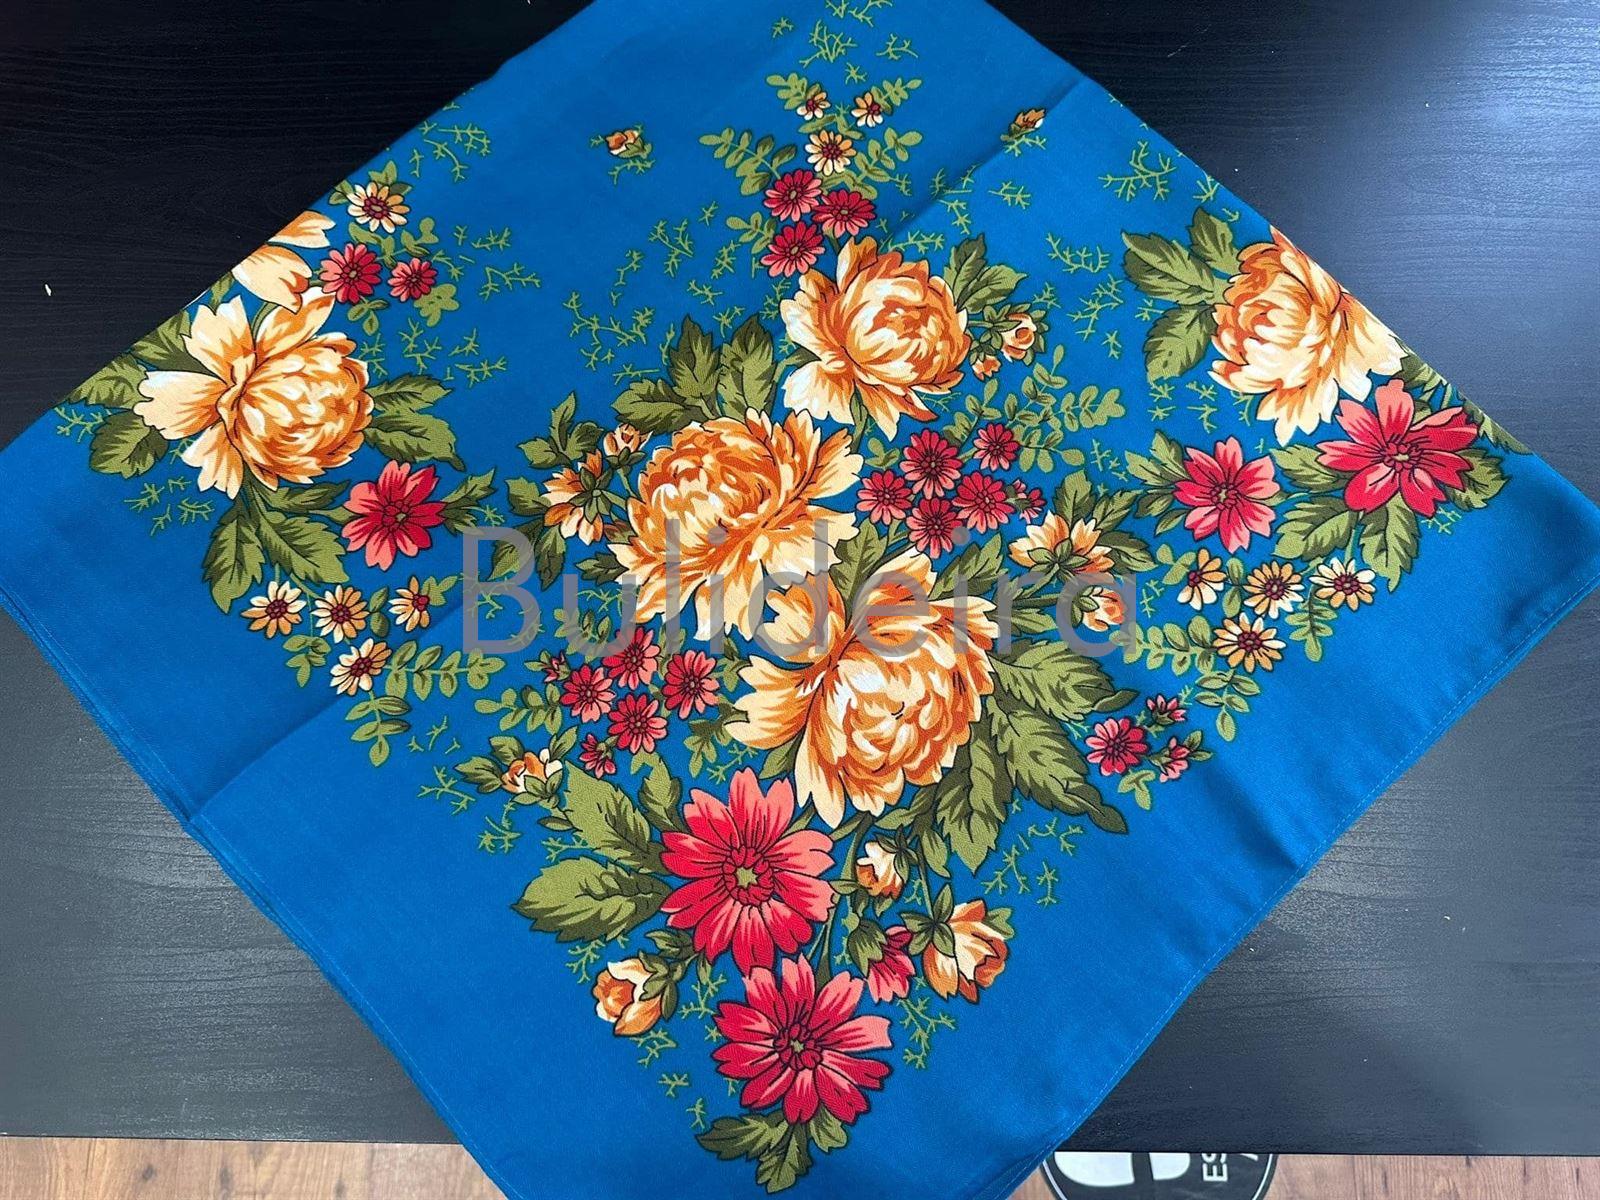 Pano de polyester de 100x100 turquesa - Imaxe 1